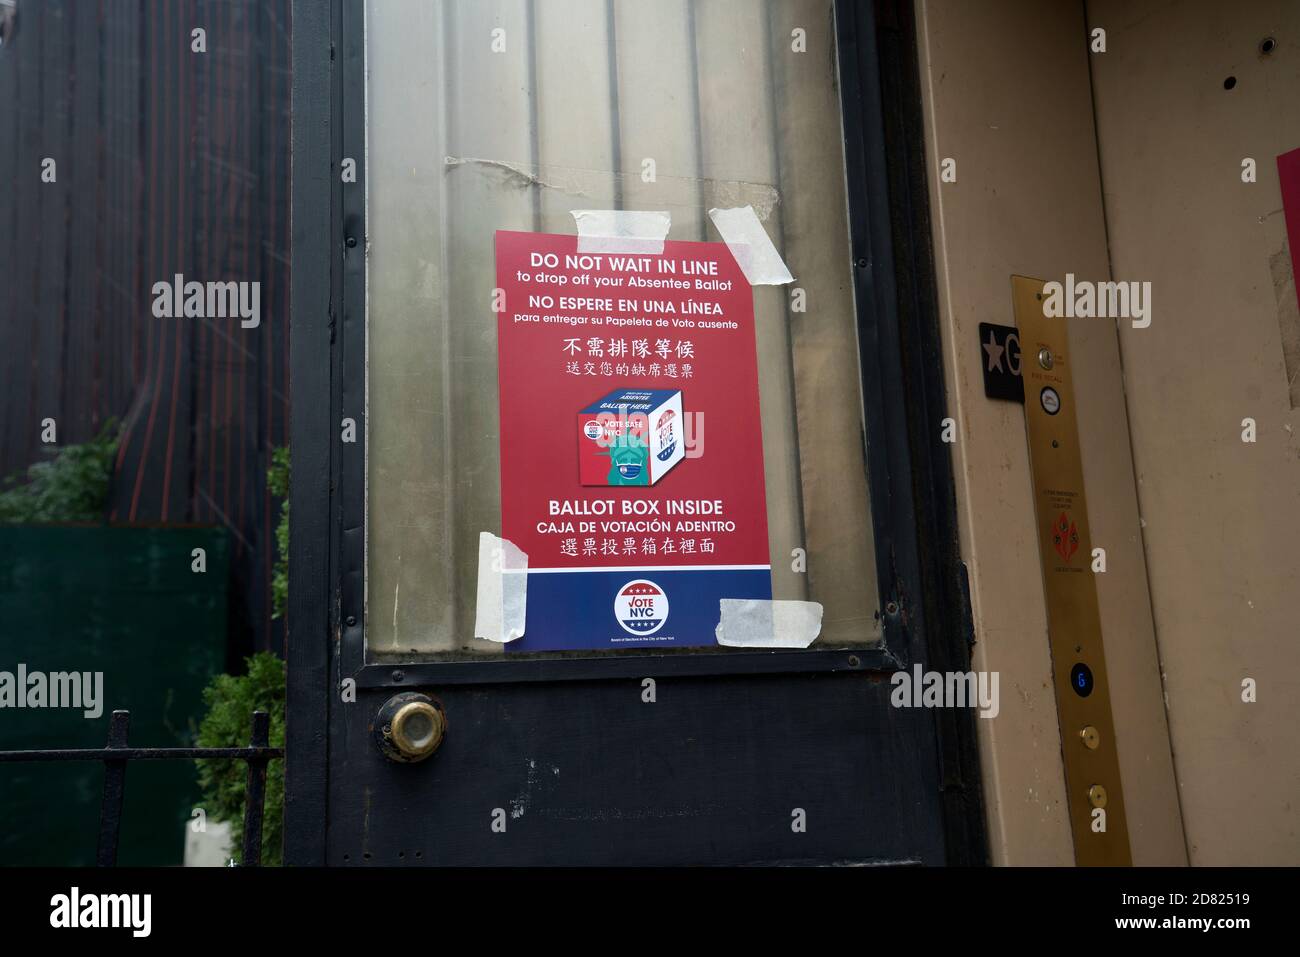 Ein Schild bei einer Umfrage in Manhattan, die für eine vorzeitige Abstimmung offen war, gab an, dass ein Drop-Box für ausgefüllte Abwesenheitswahlzettel zur Verfügung stand, um Wartezeiten in der Schlange zu vermeiden. Stockfoto